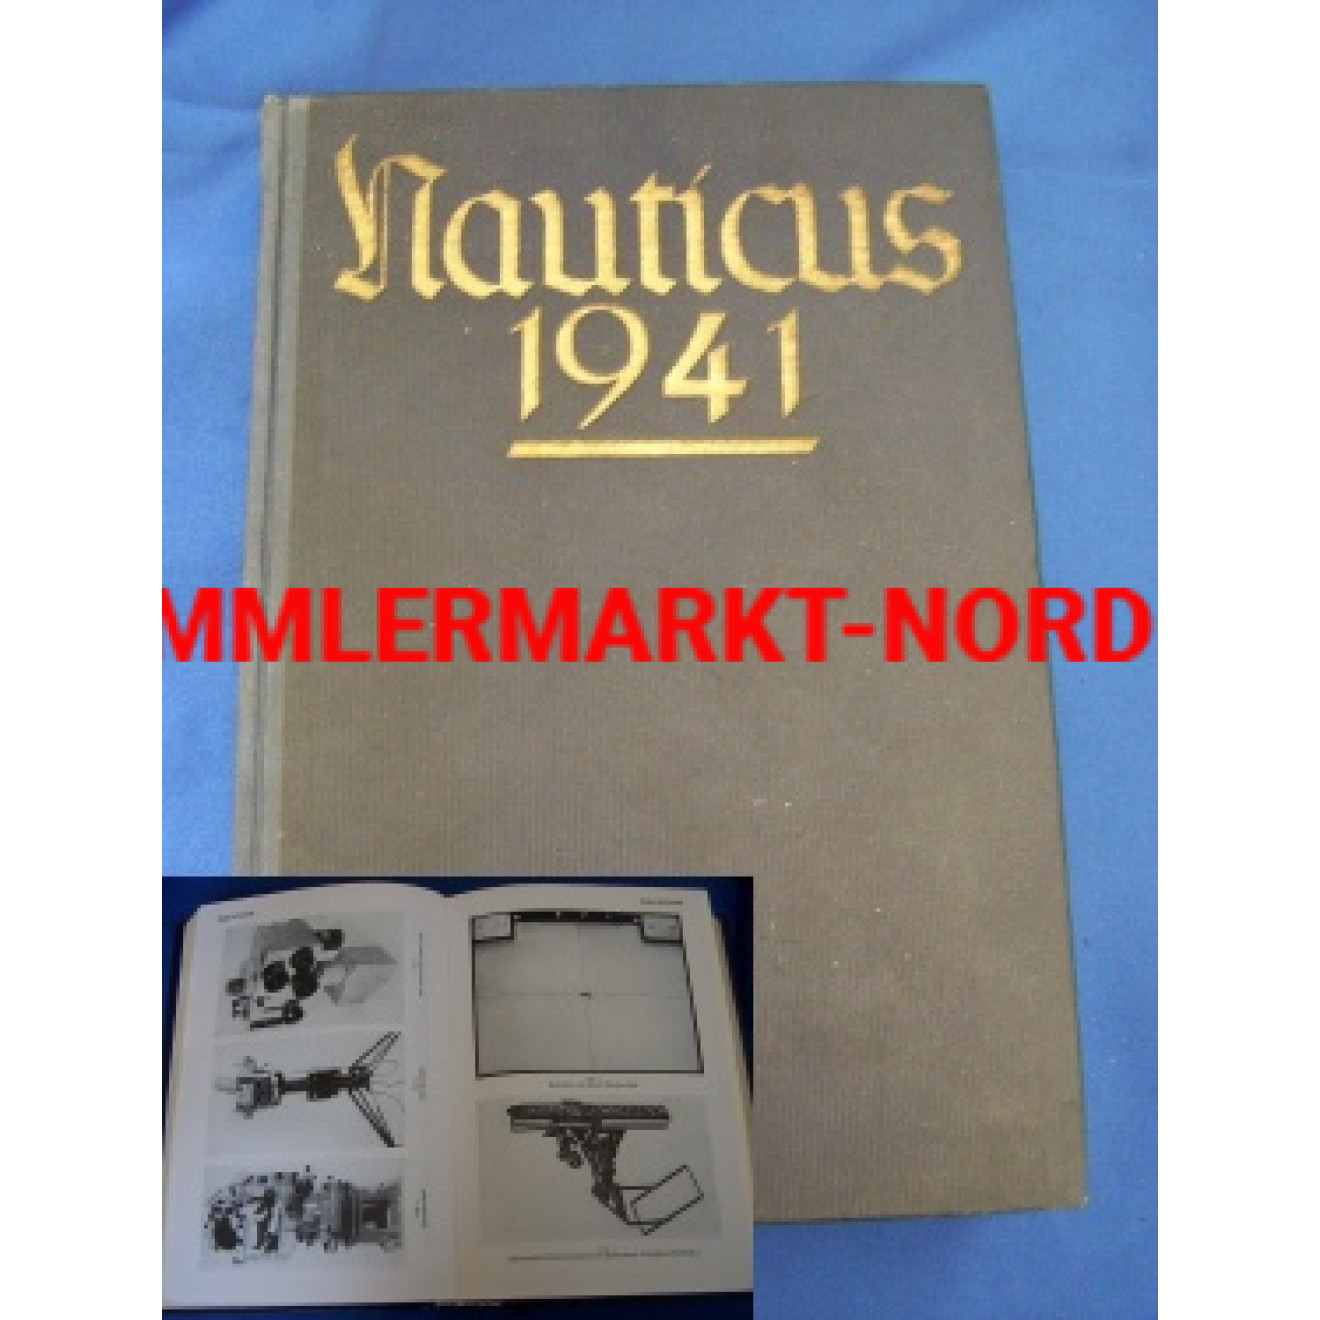 Nauticus 1941